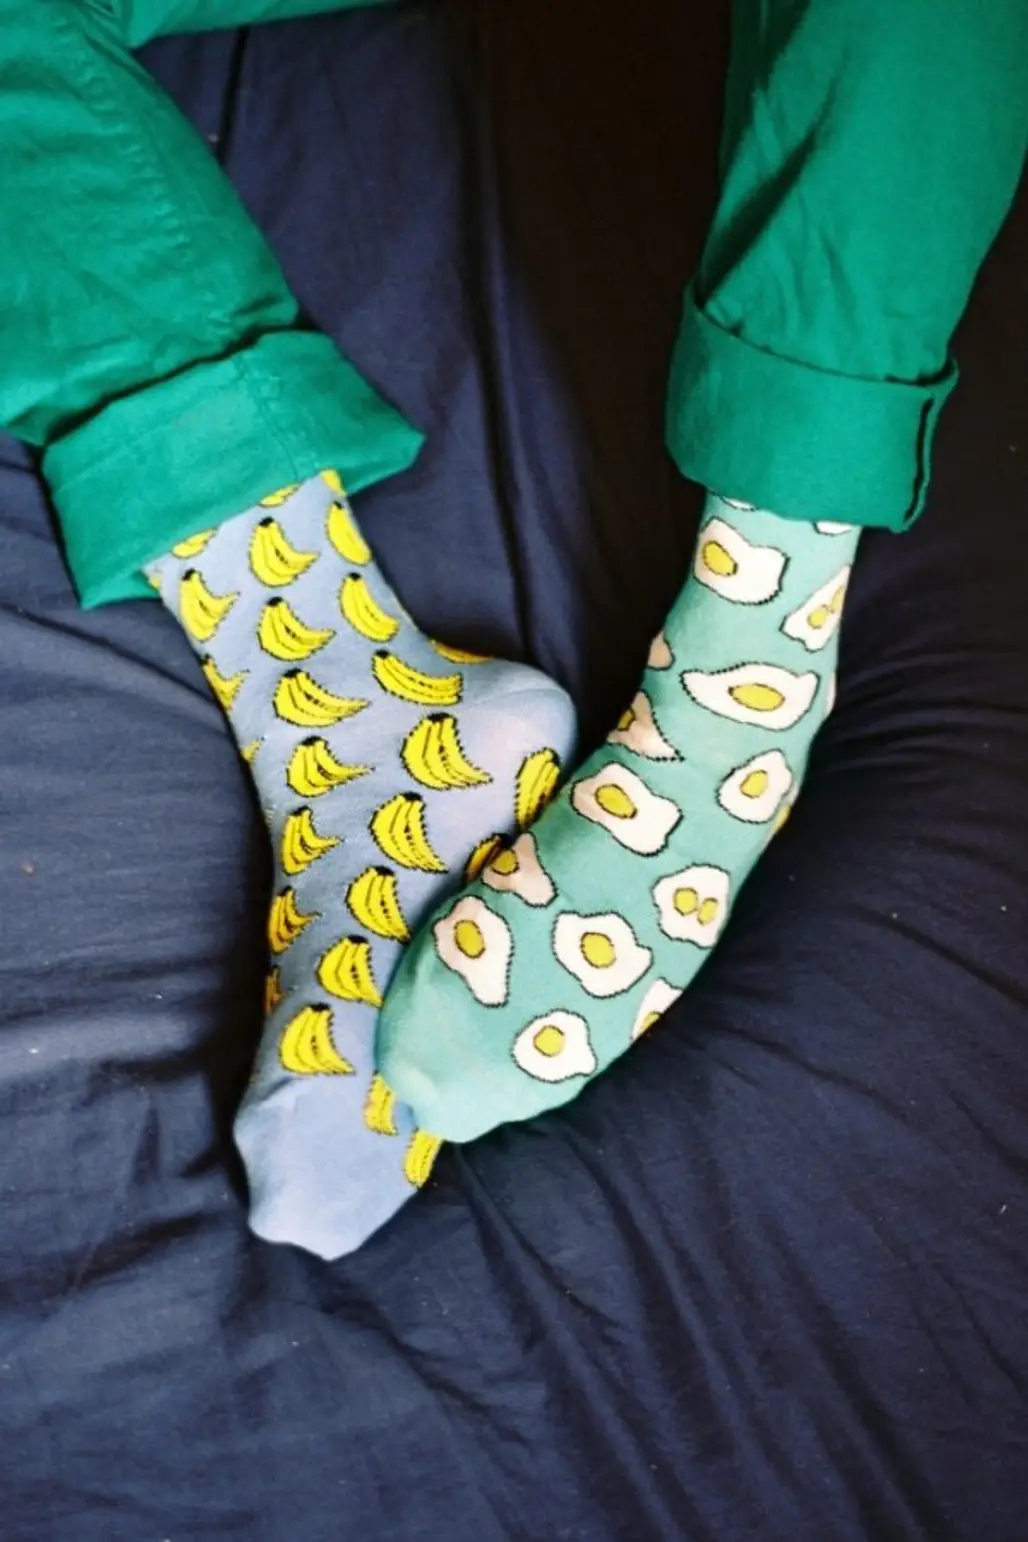 Banana and Egg Socks